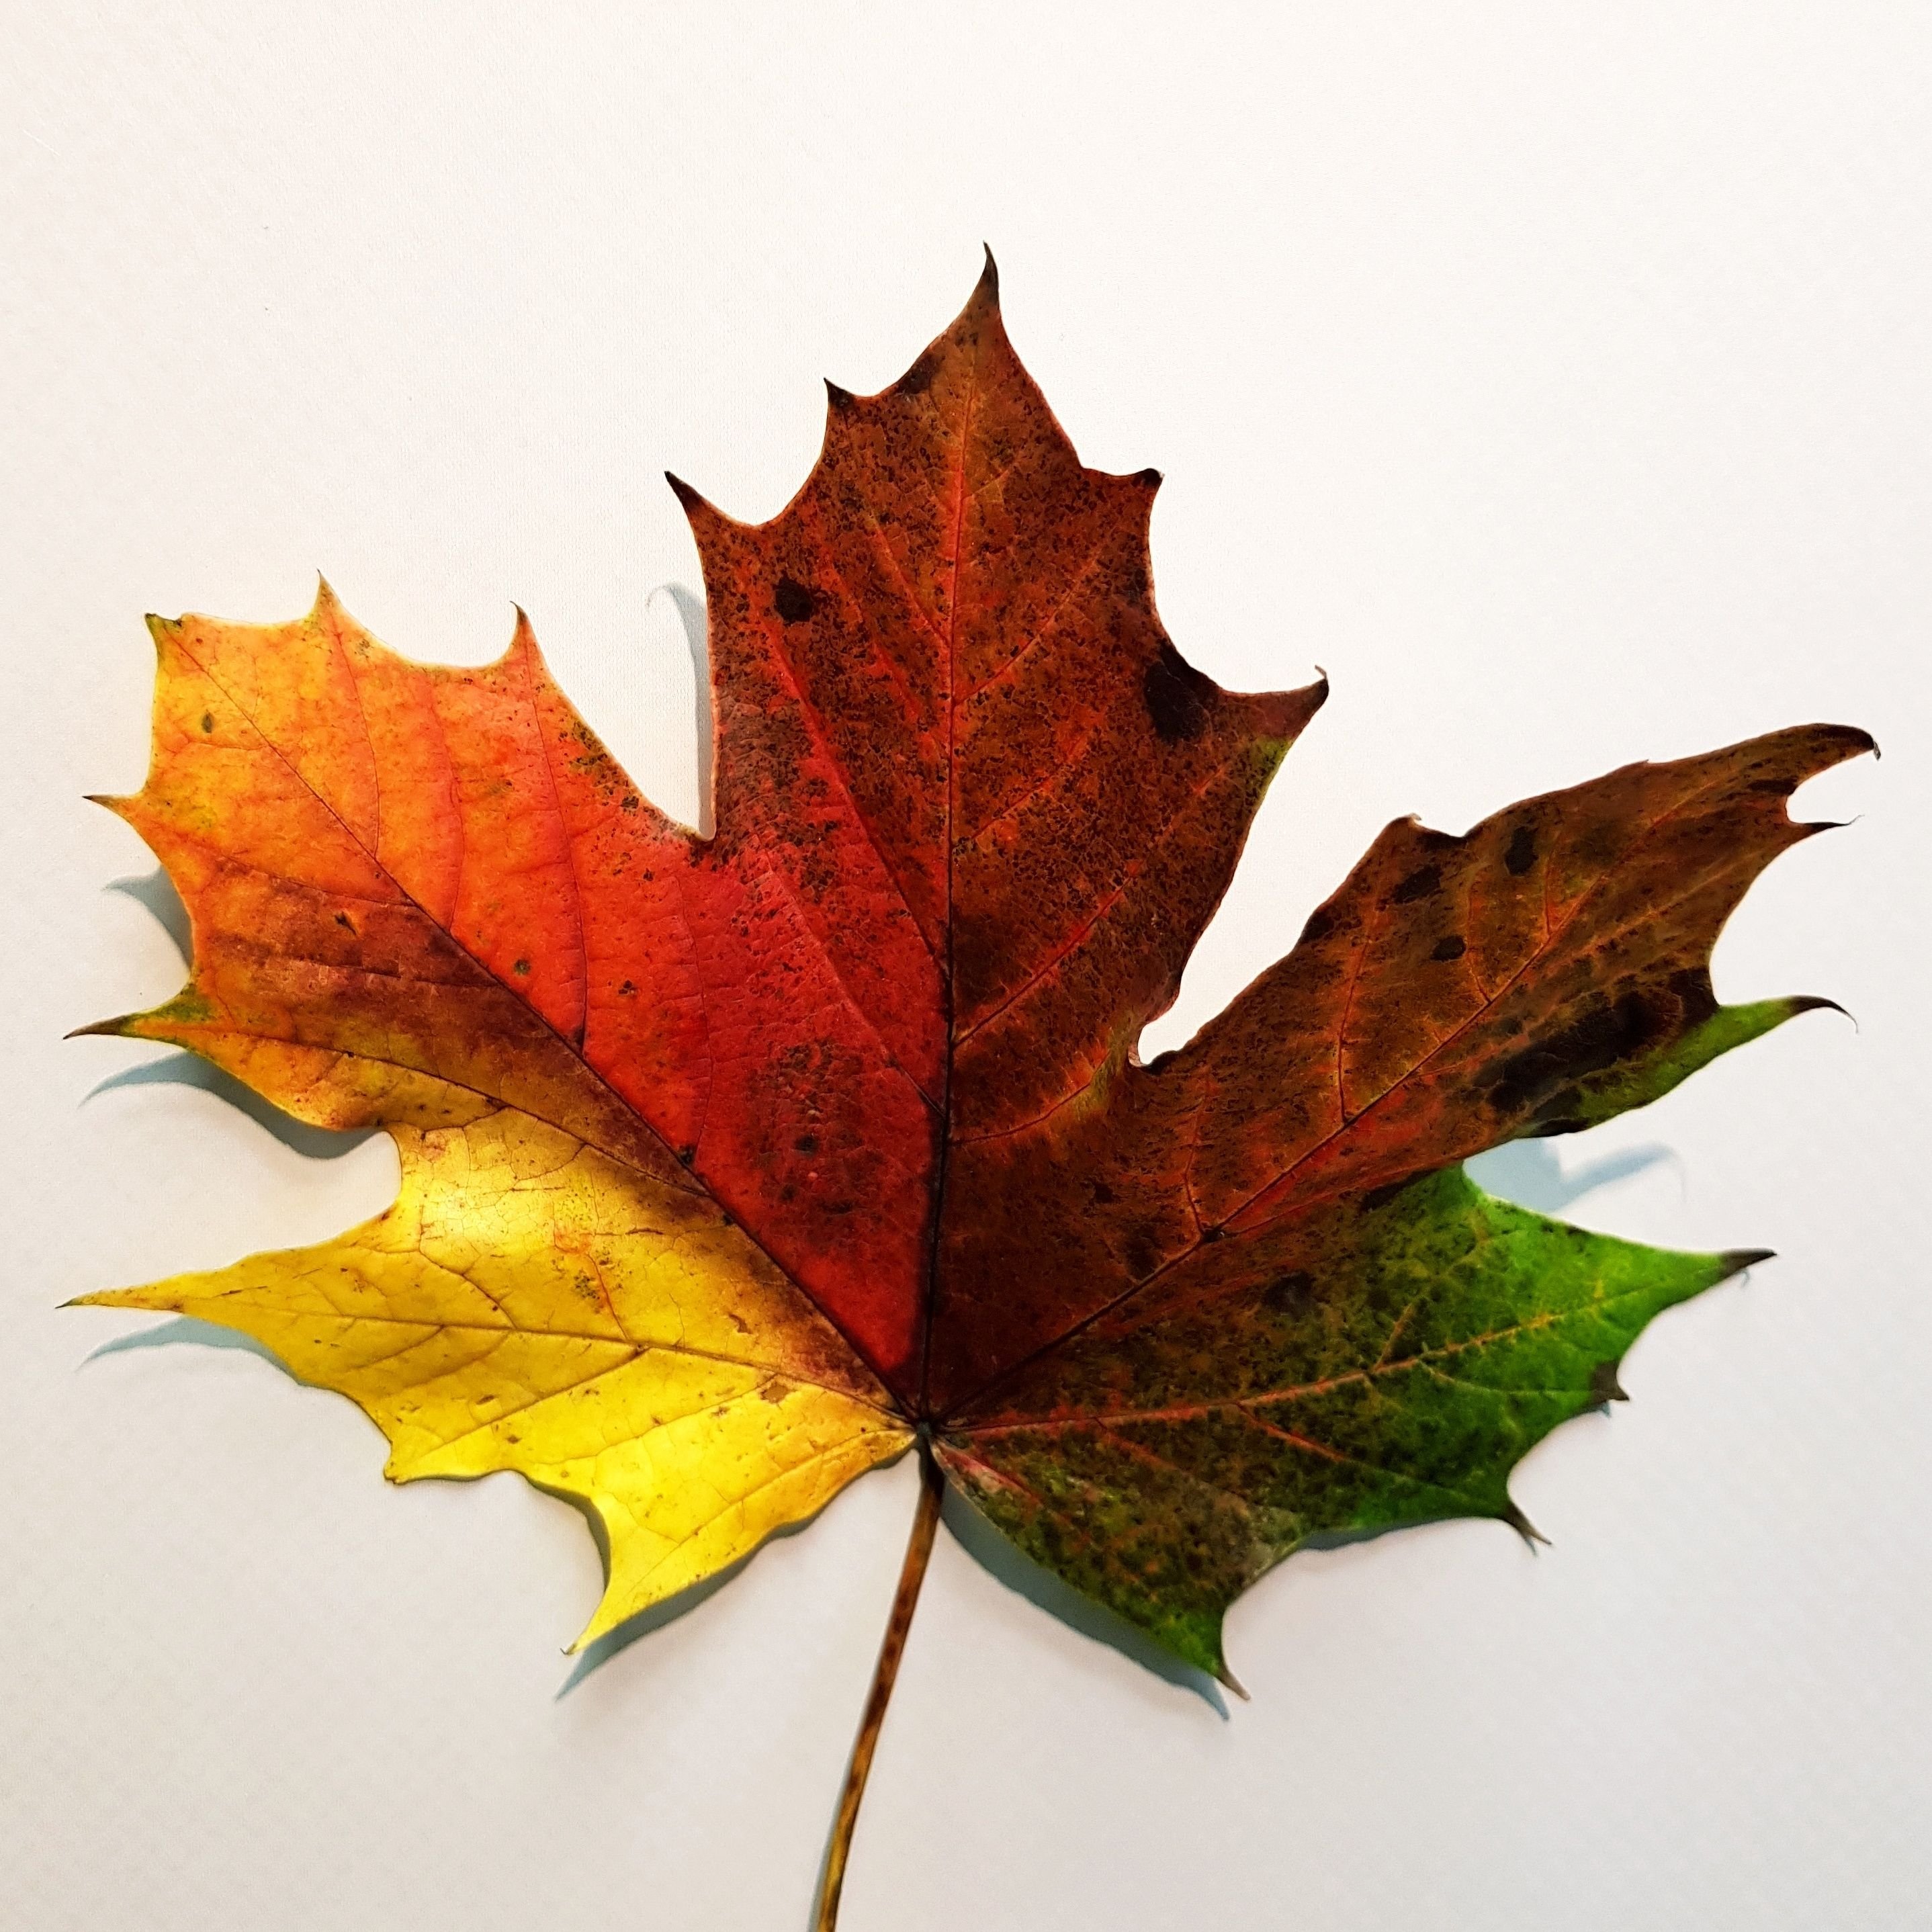 Лист арт. Кленовый лист арт. Осенние листья арт. Художественное изображение осеннего листа. Картинки необычные листья.